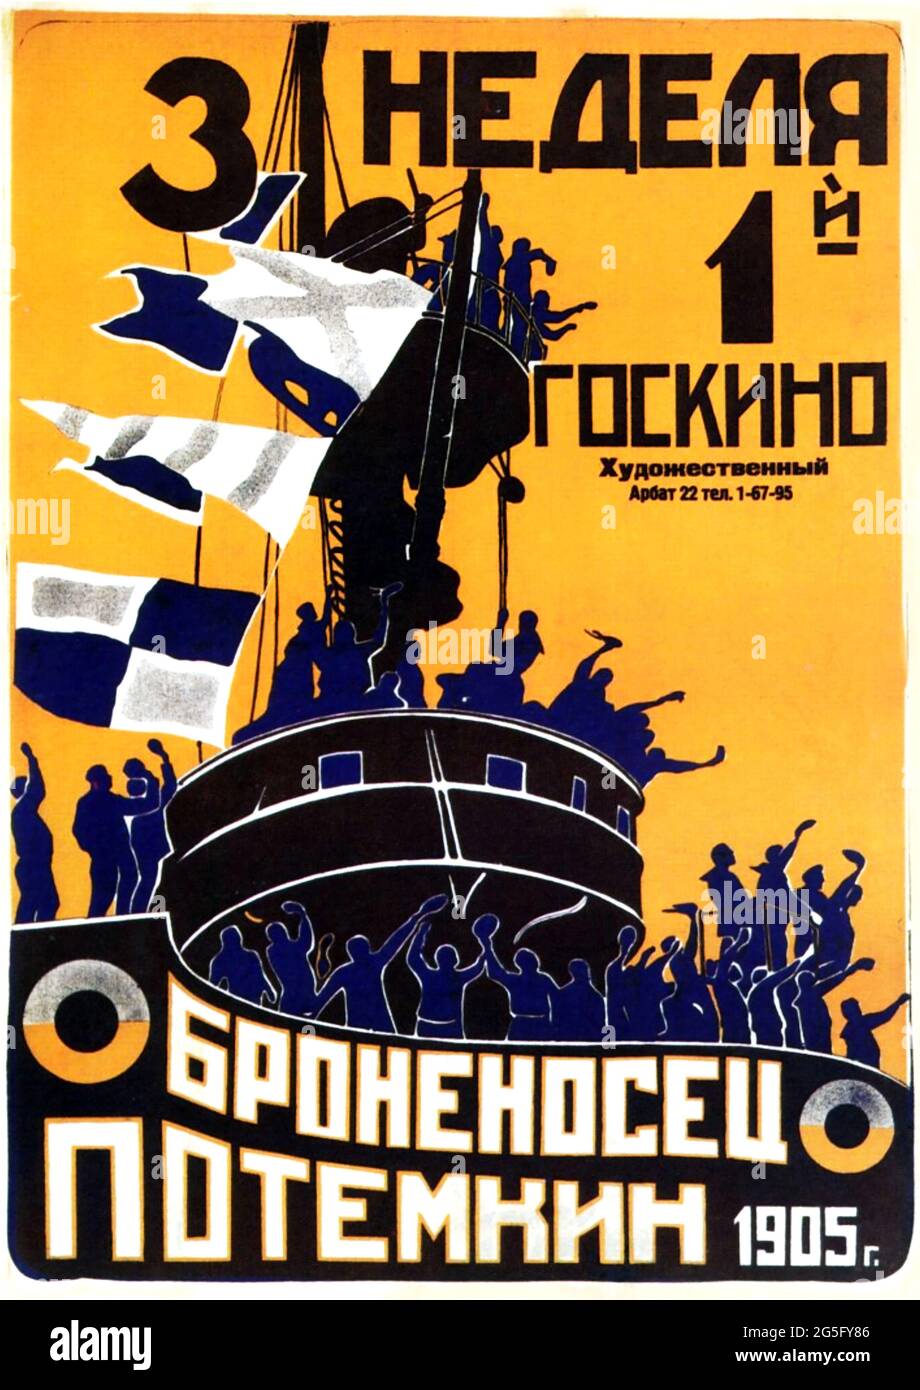 La corazzata Potemkin, a volte resa come corazzata Potyomkin, è un film silente sovietico del 1925 diretto da Sergei Eisenstein. Foto Stock